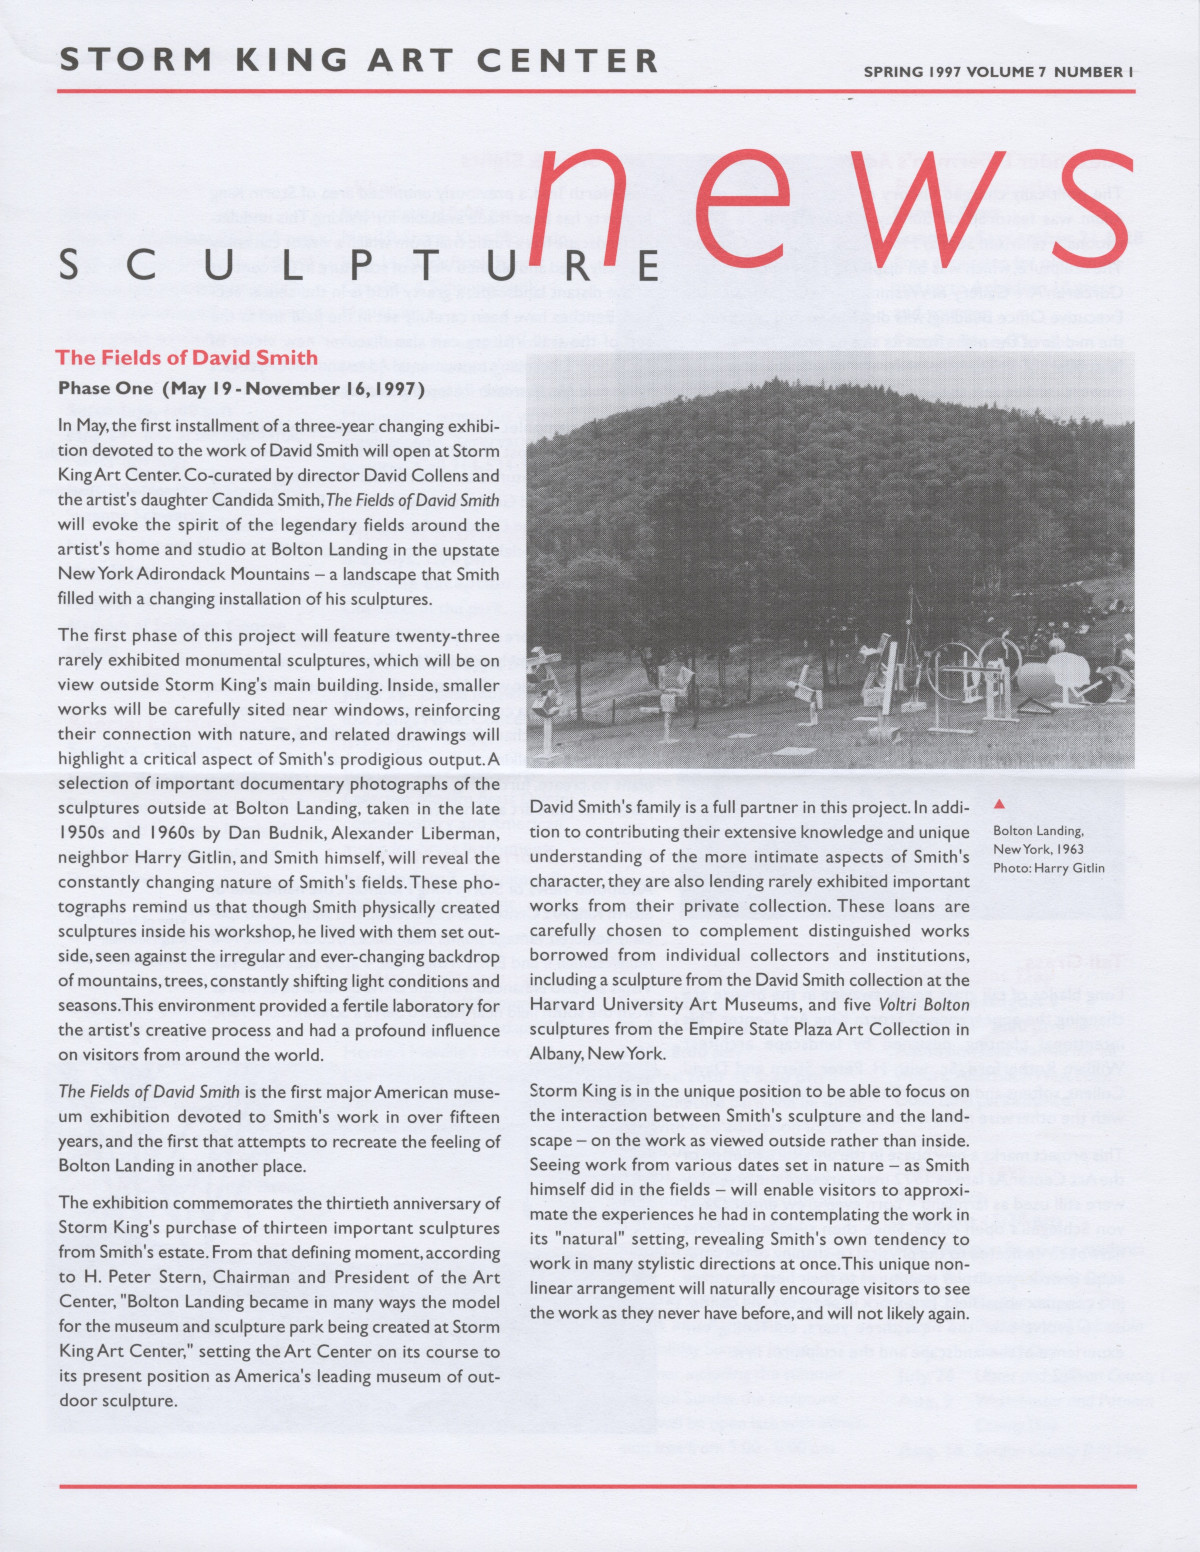 Storm King Art Center Newsletter, Spring 1997